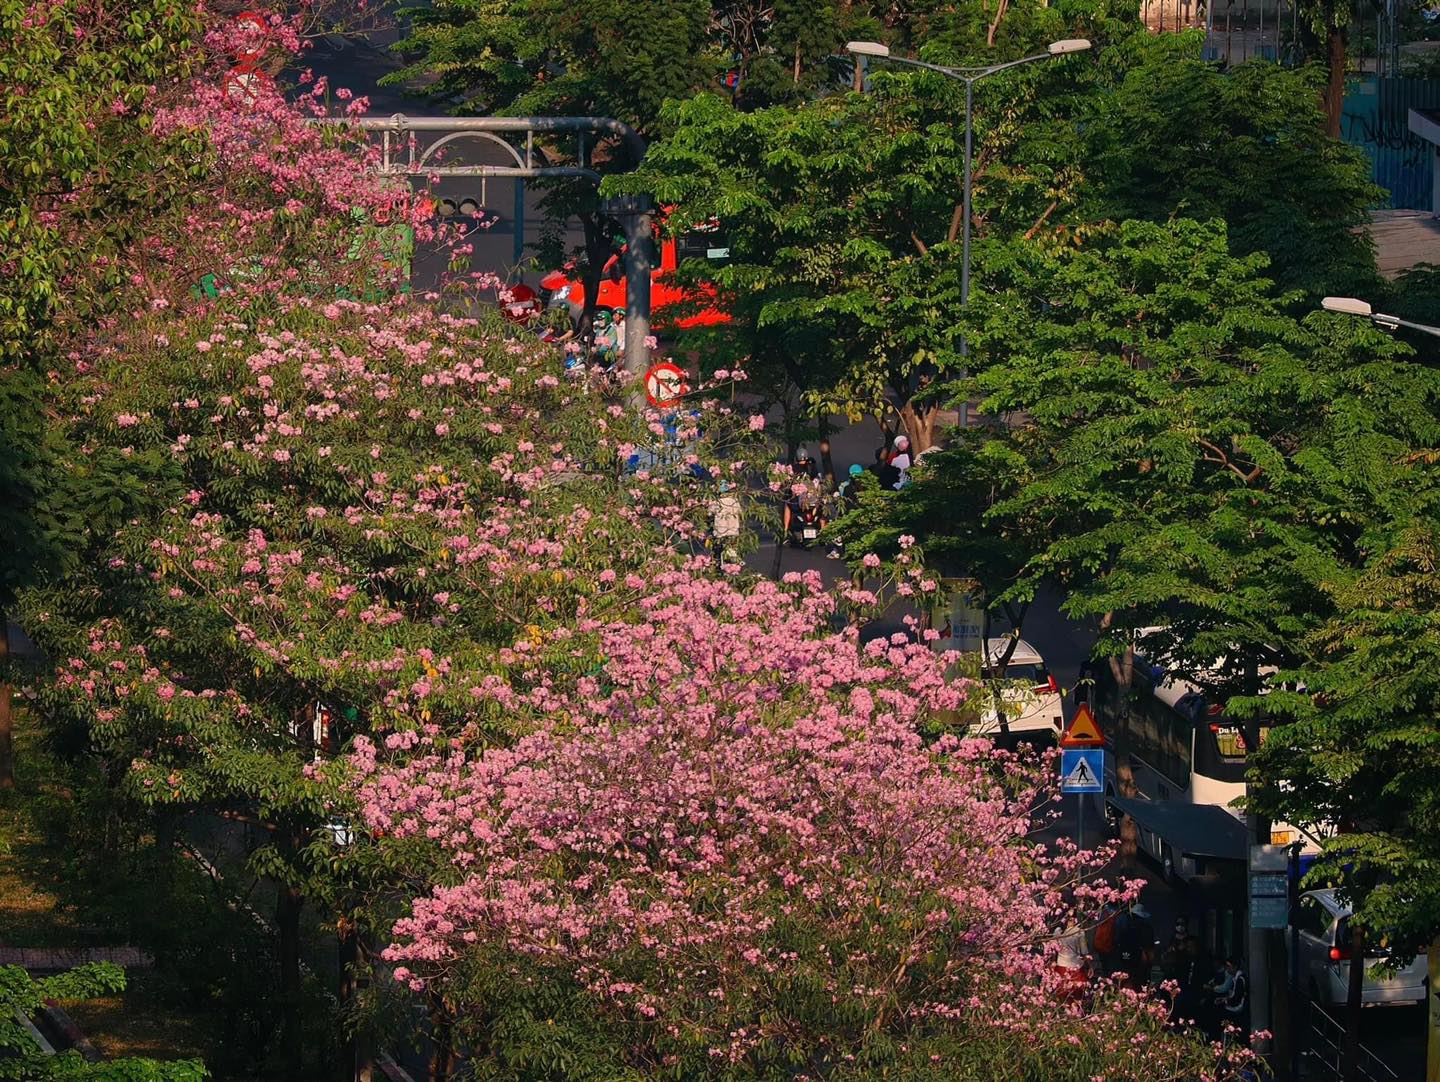 Mùa kèn hồng rợp trời Sài Gòn, chợt thấy thành phố mộng mơ biết bao giữa sắc hoa rực rỡ- Ảnh 19.